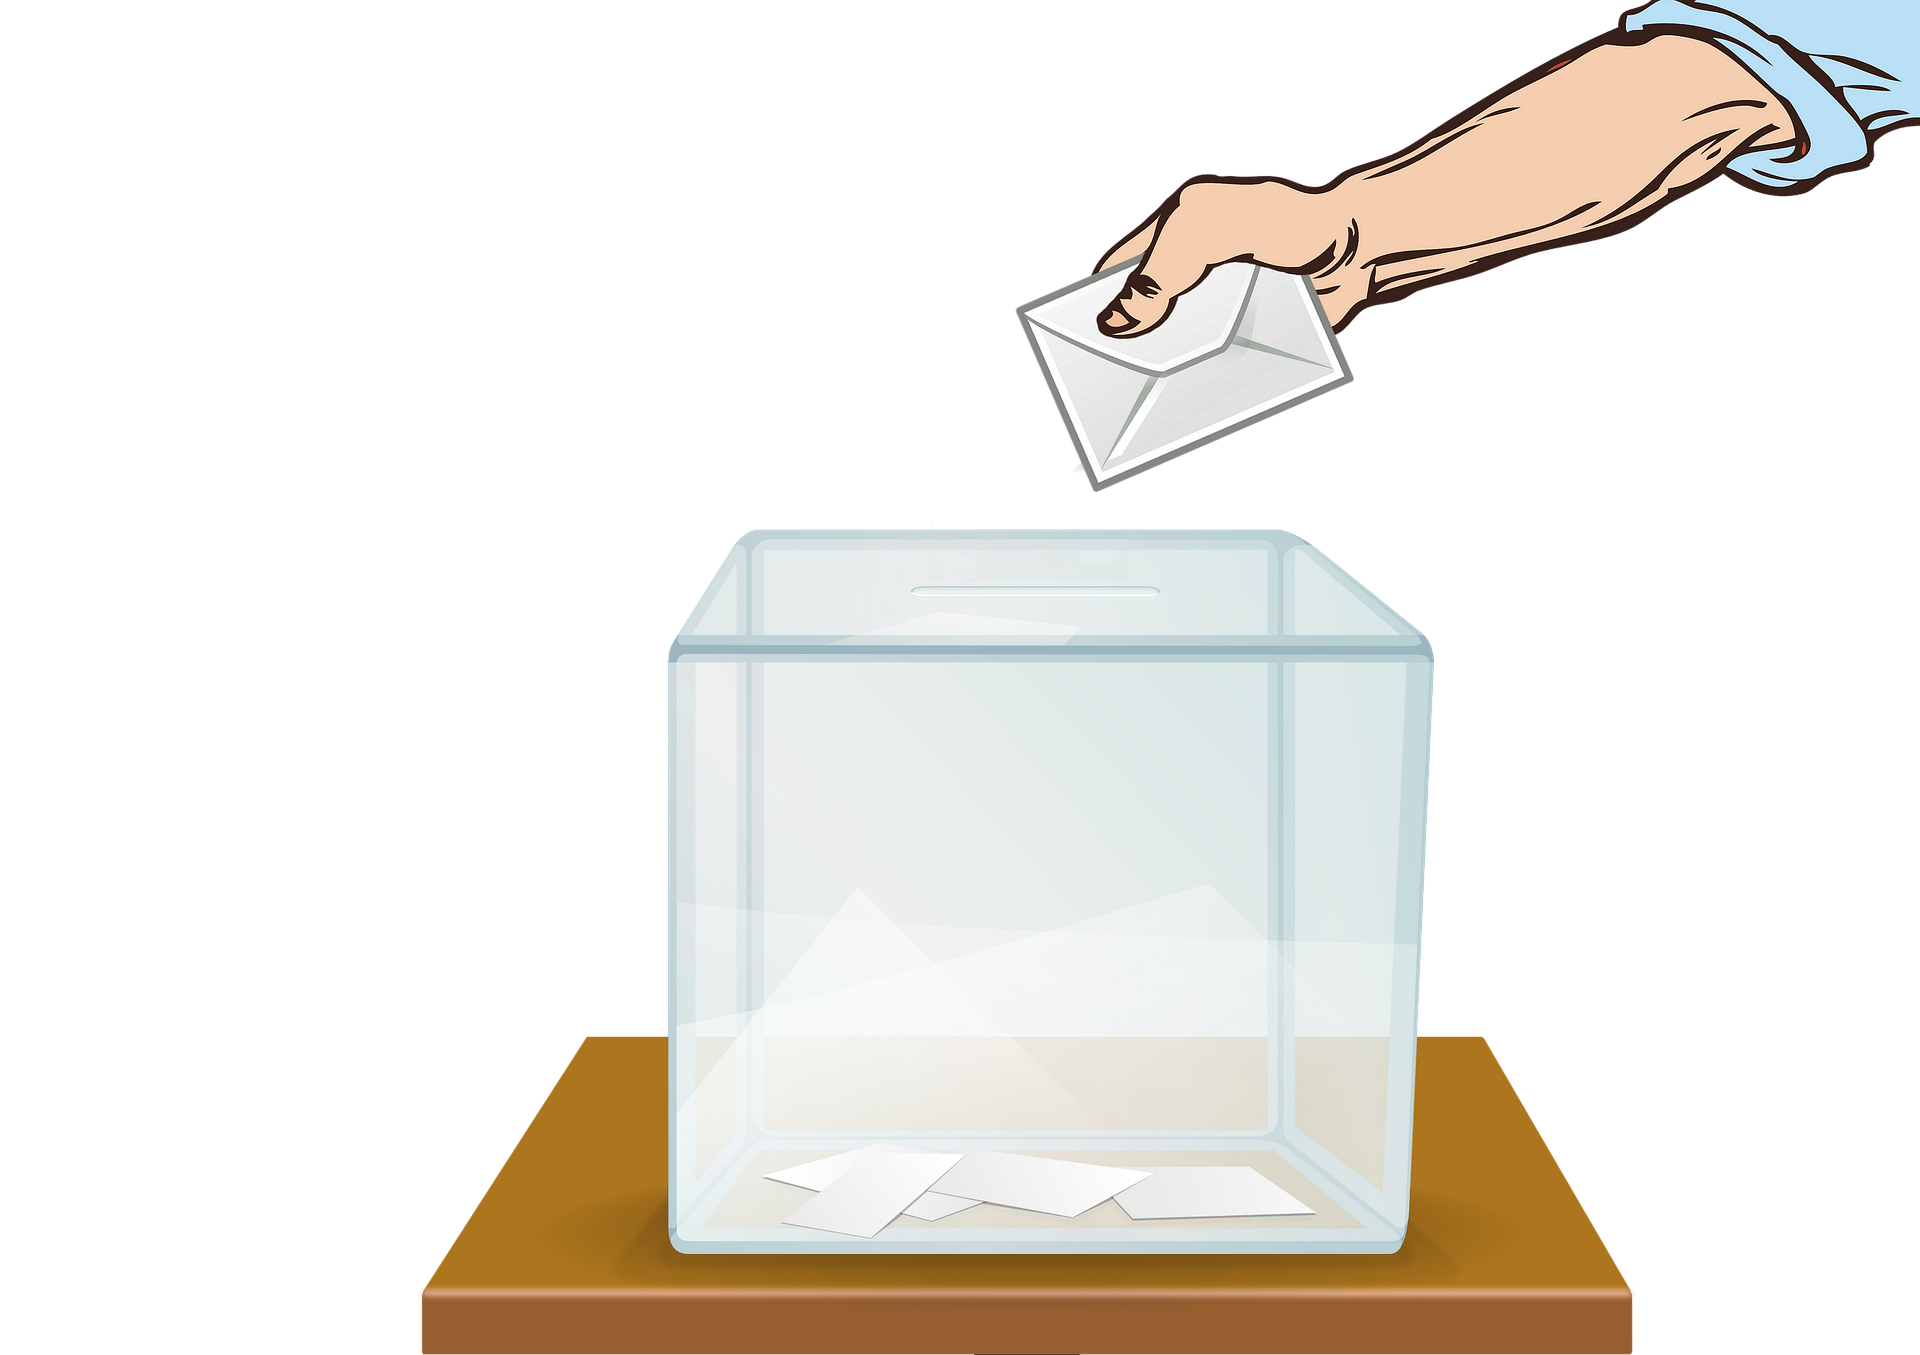 Le Bureau de vote mis en place pour un scrutin : comment est-il composé et comment fonctionne-t-il ?